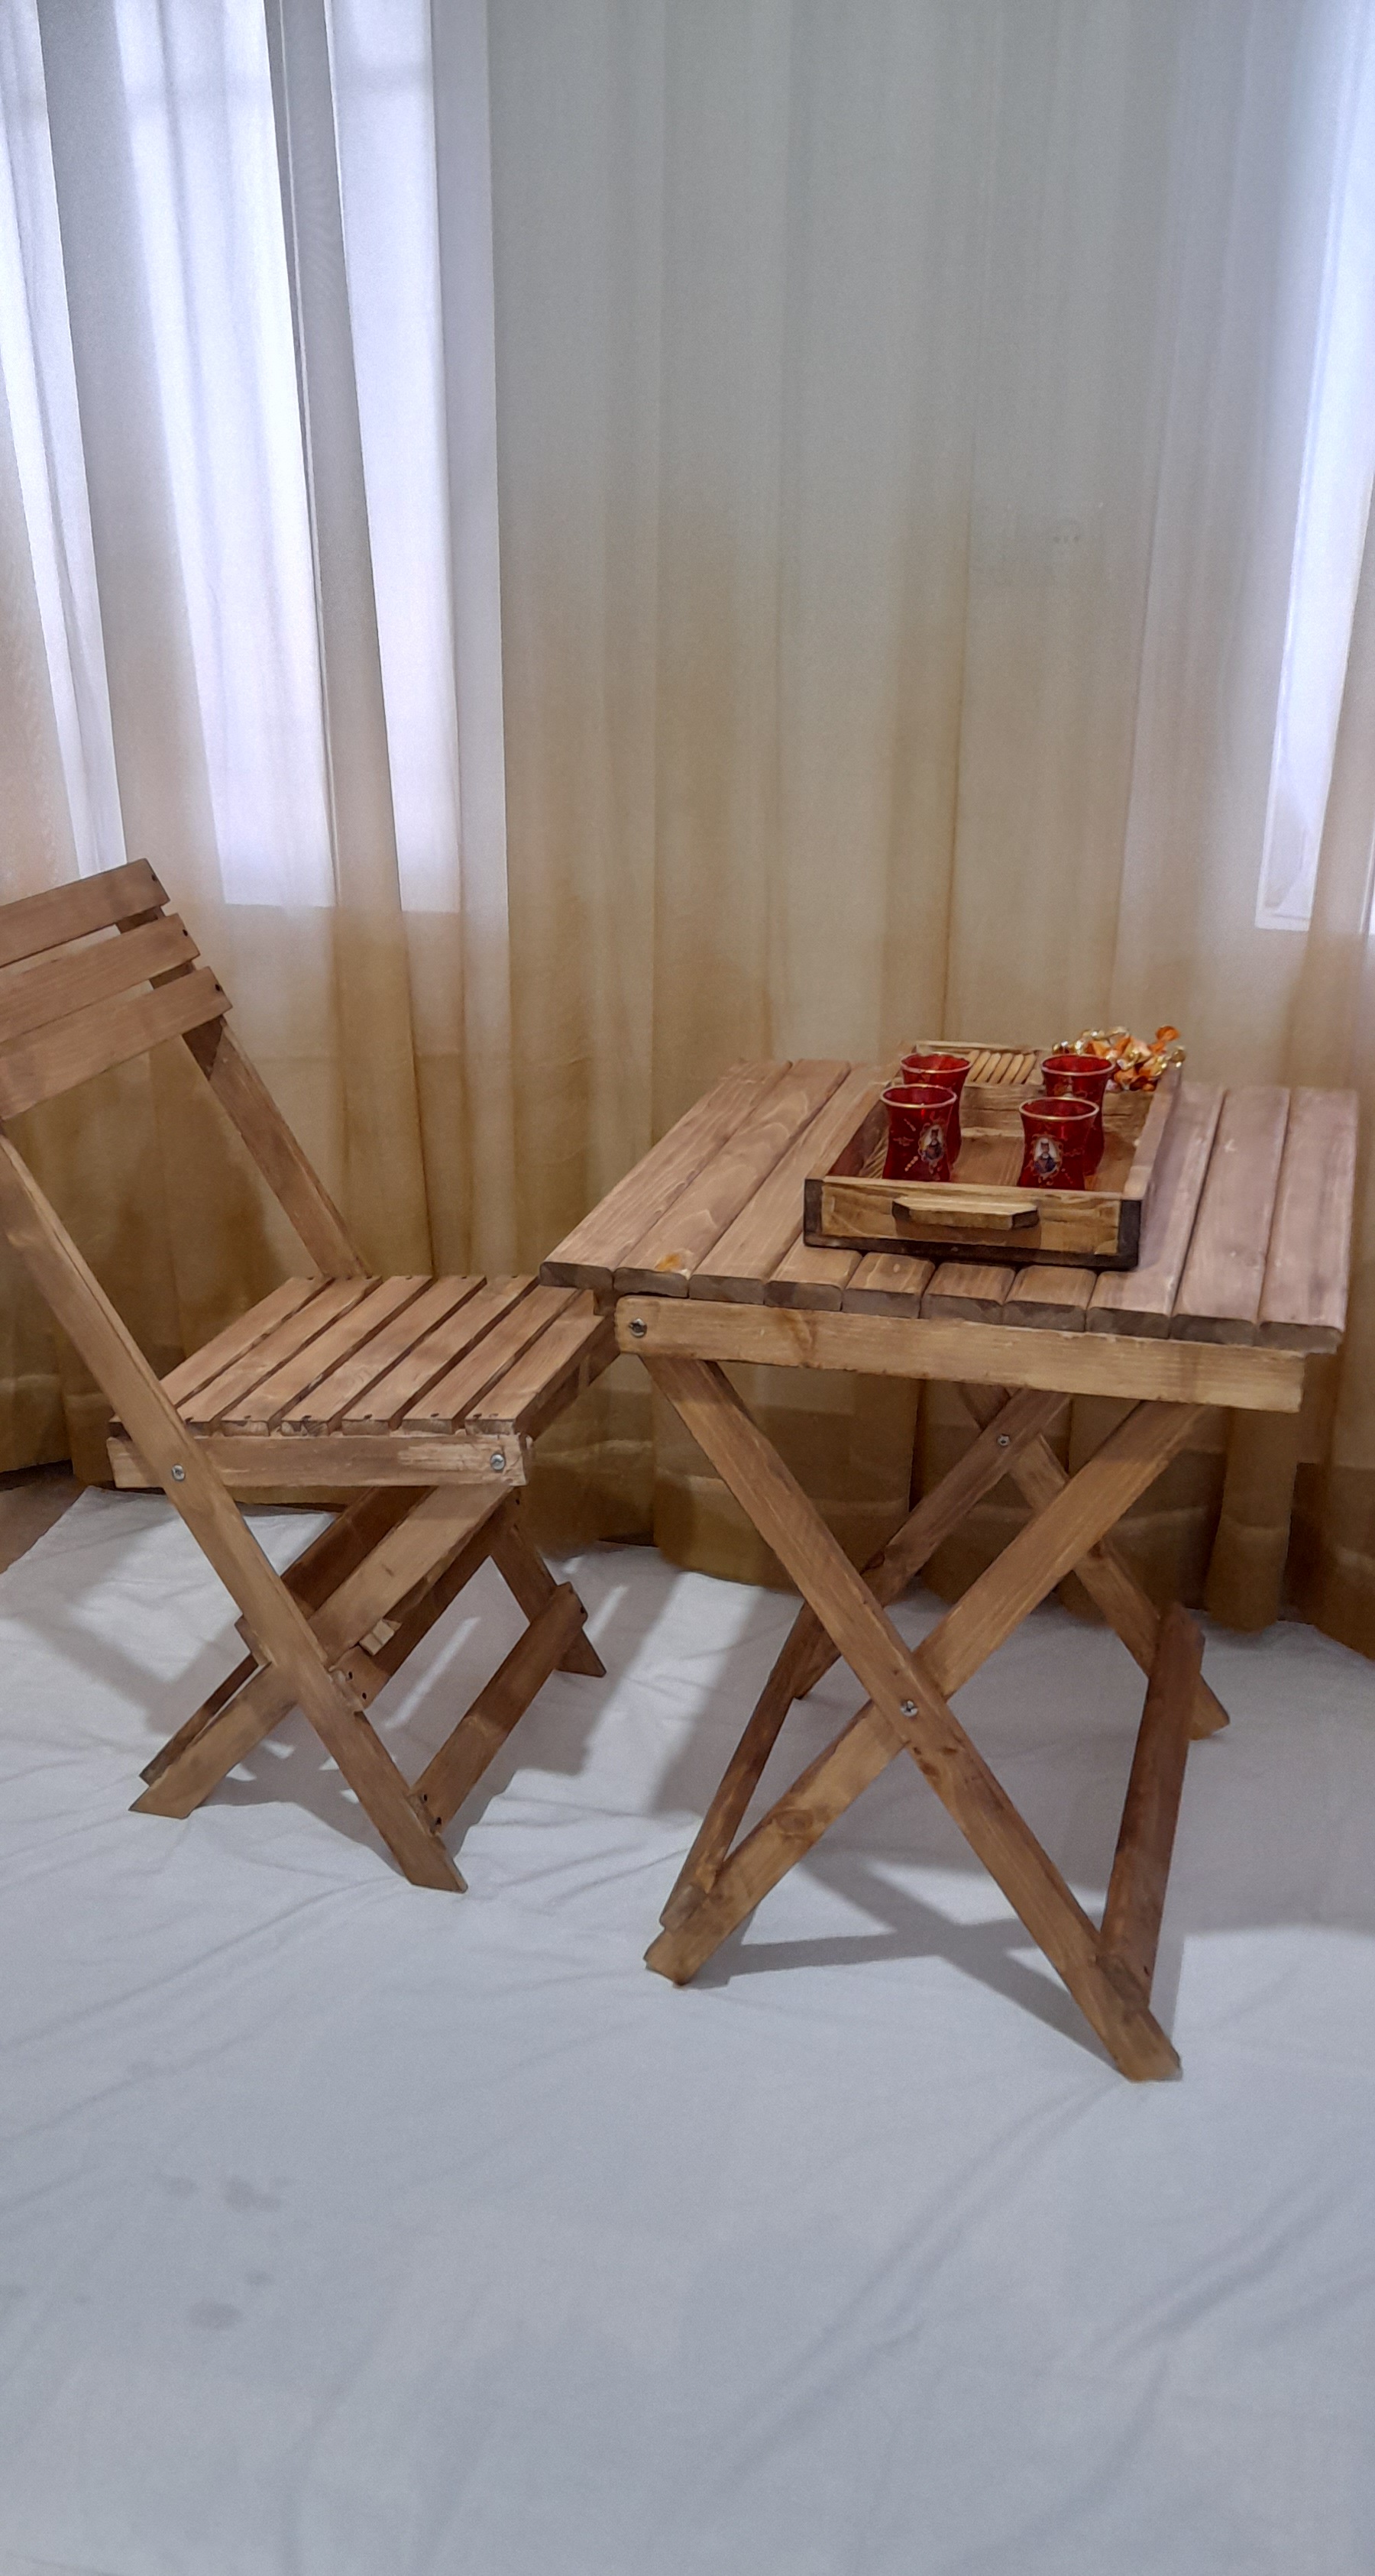 میزوصندلی یک نفره تاشو کم حجم چوب روس فروش ویژه عید نوروز (خرید مستقیم از تولیدکننده)